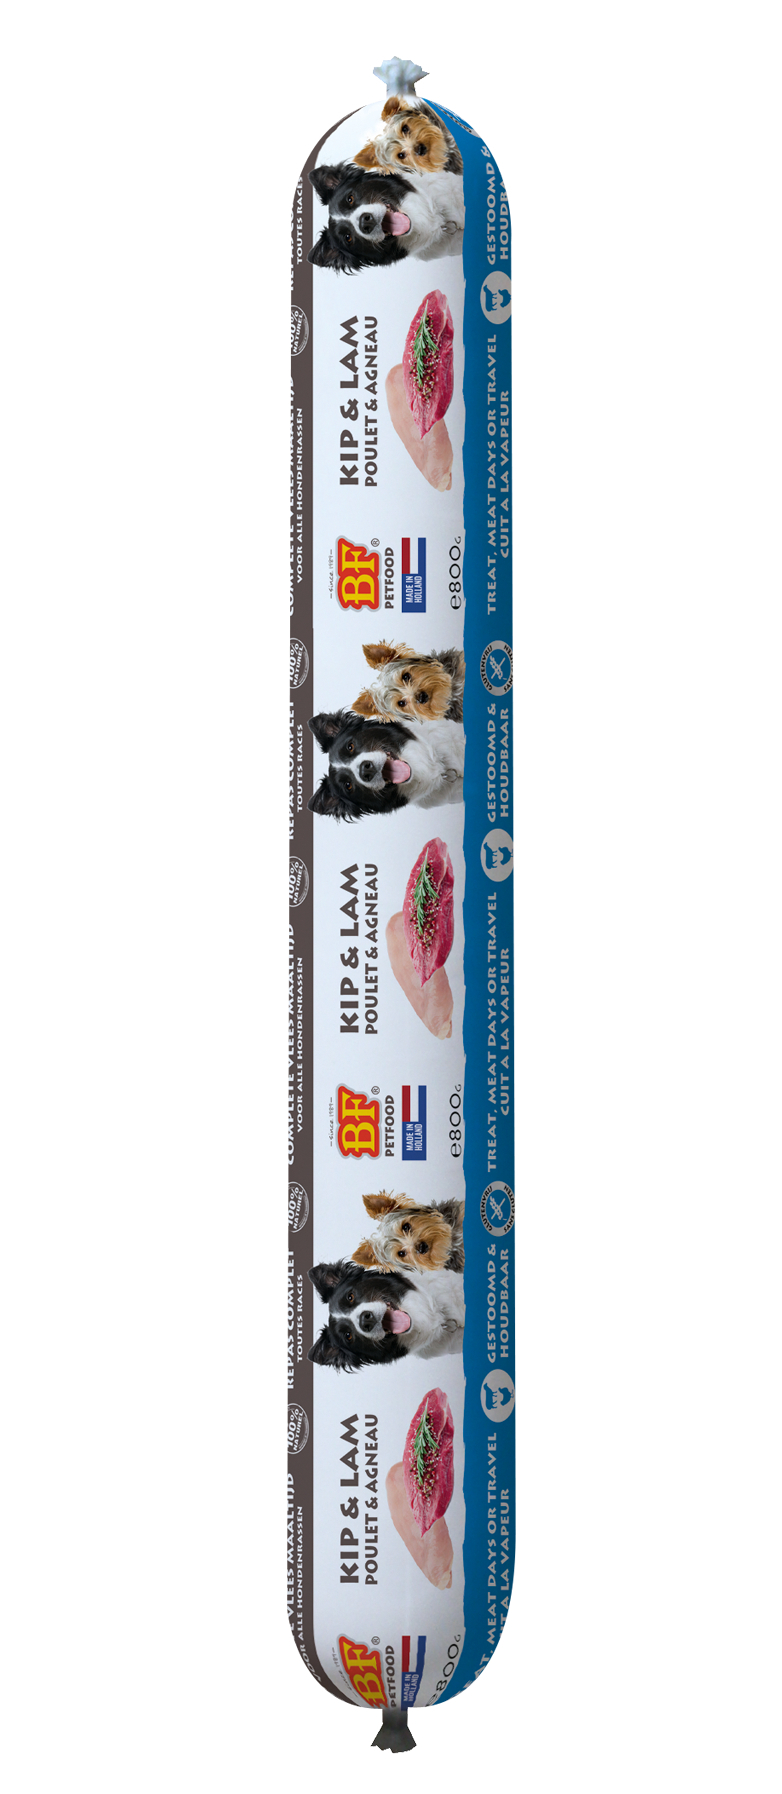 BIOFOOD für Hunde und Welpen 800gr - 3 Geschmacksrichtungen zur Auswahl